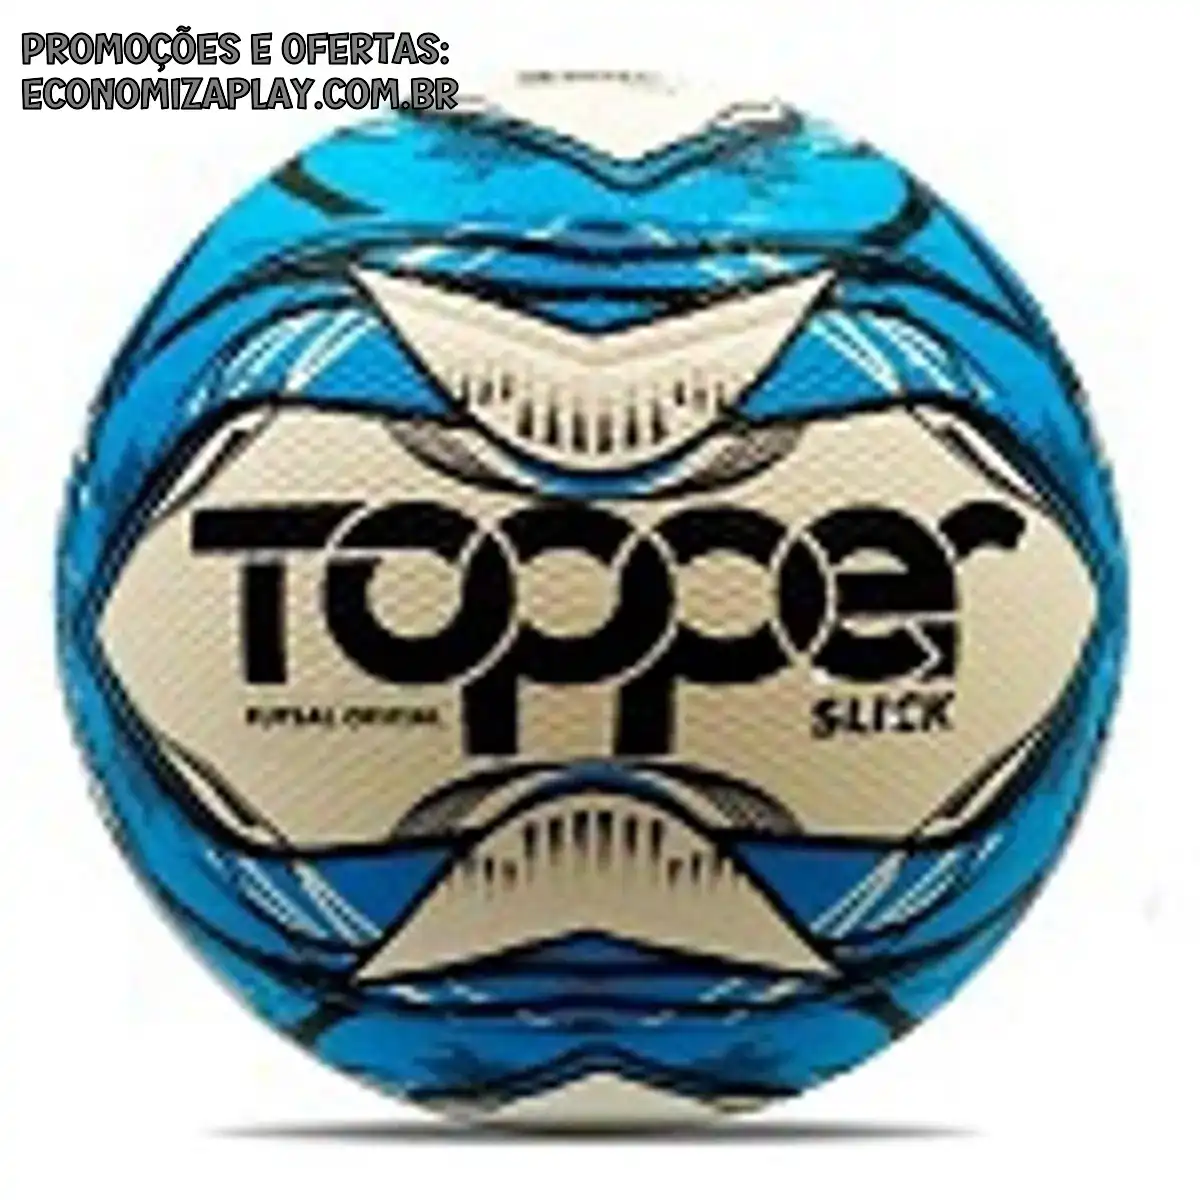 Bola Topper Slick Ii Futsal Futebol de Salão Original